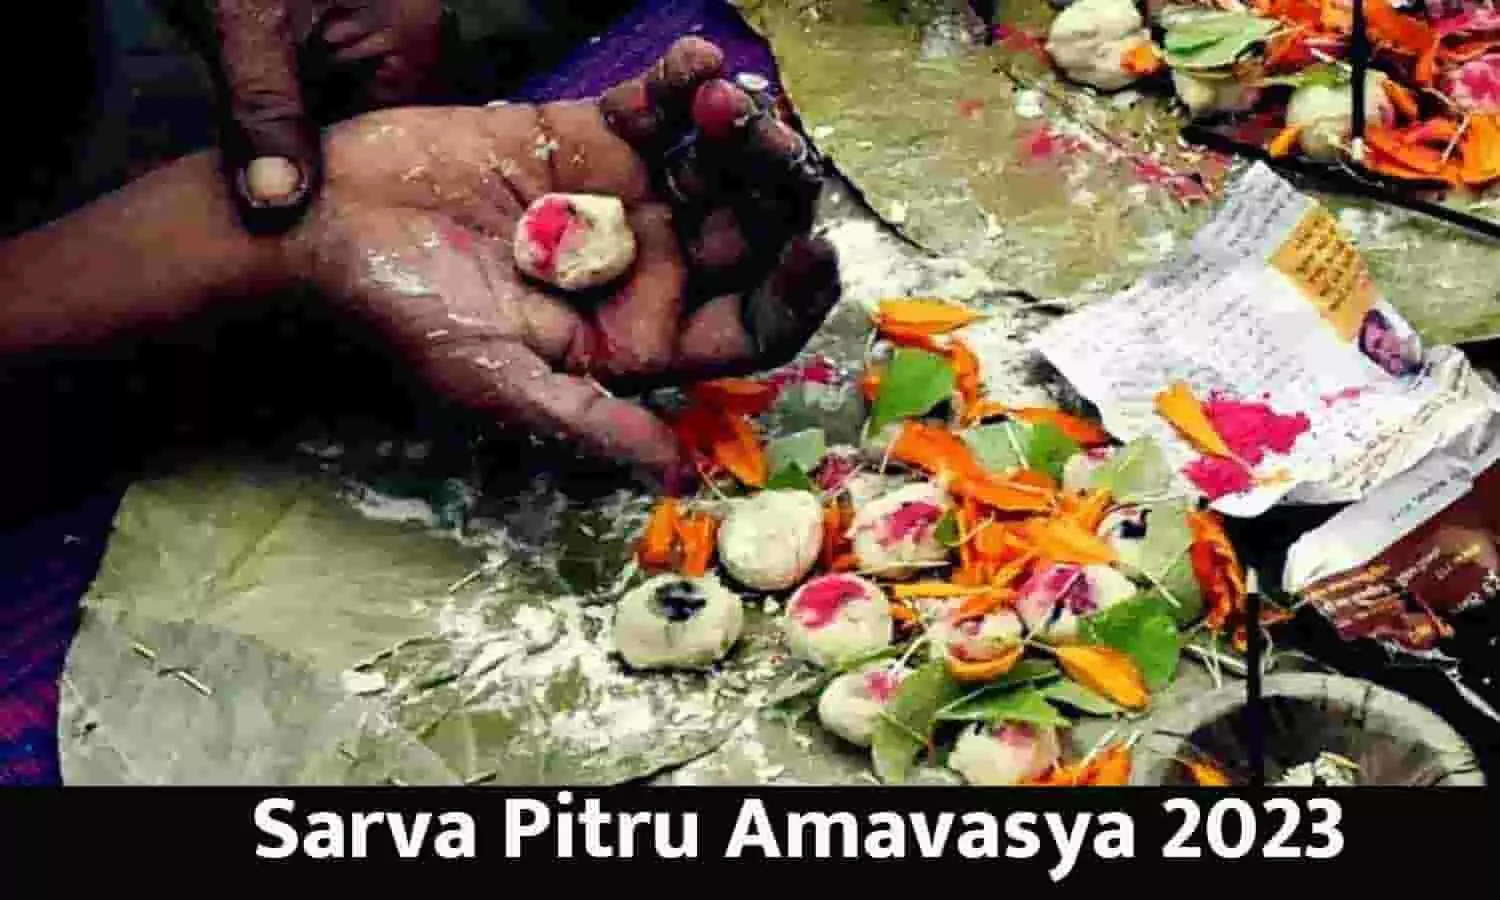 Sarva Pitru Amavasya 2023 Date And Timings In India: पितरो को खुश करने का आखिरी मौका, सर्वपितृ अमावस्या? जानें डेट, श्राद्ध मुहूर्त और तर्पण विधी